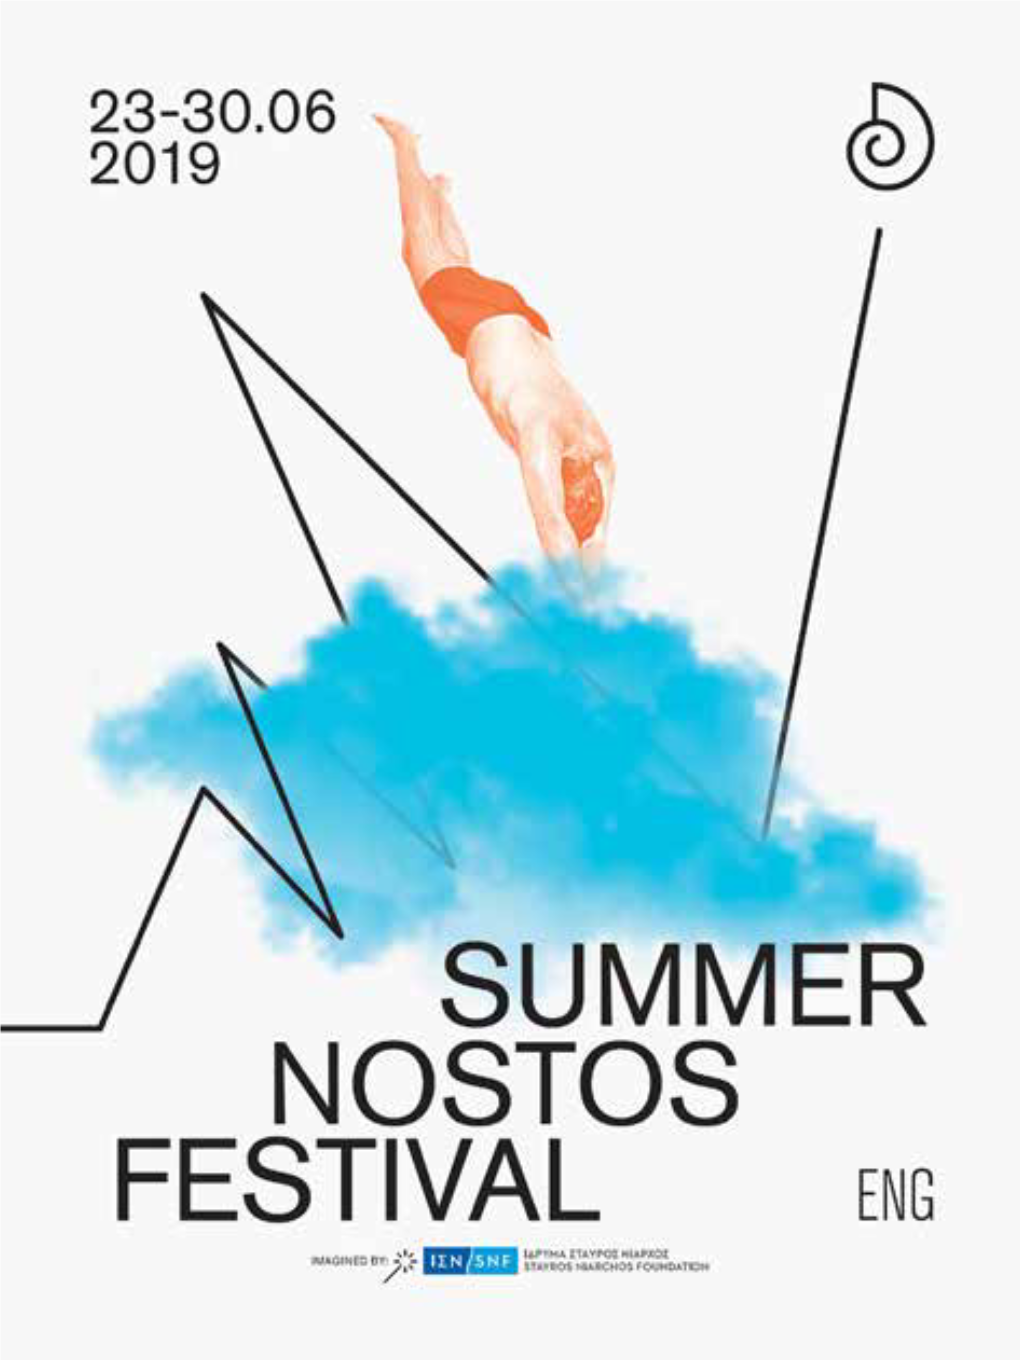 Summer Nostos Festival 2019!